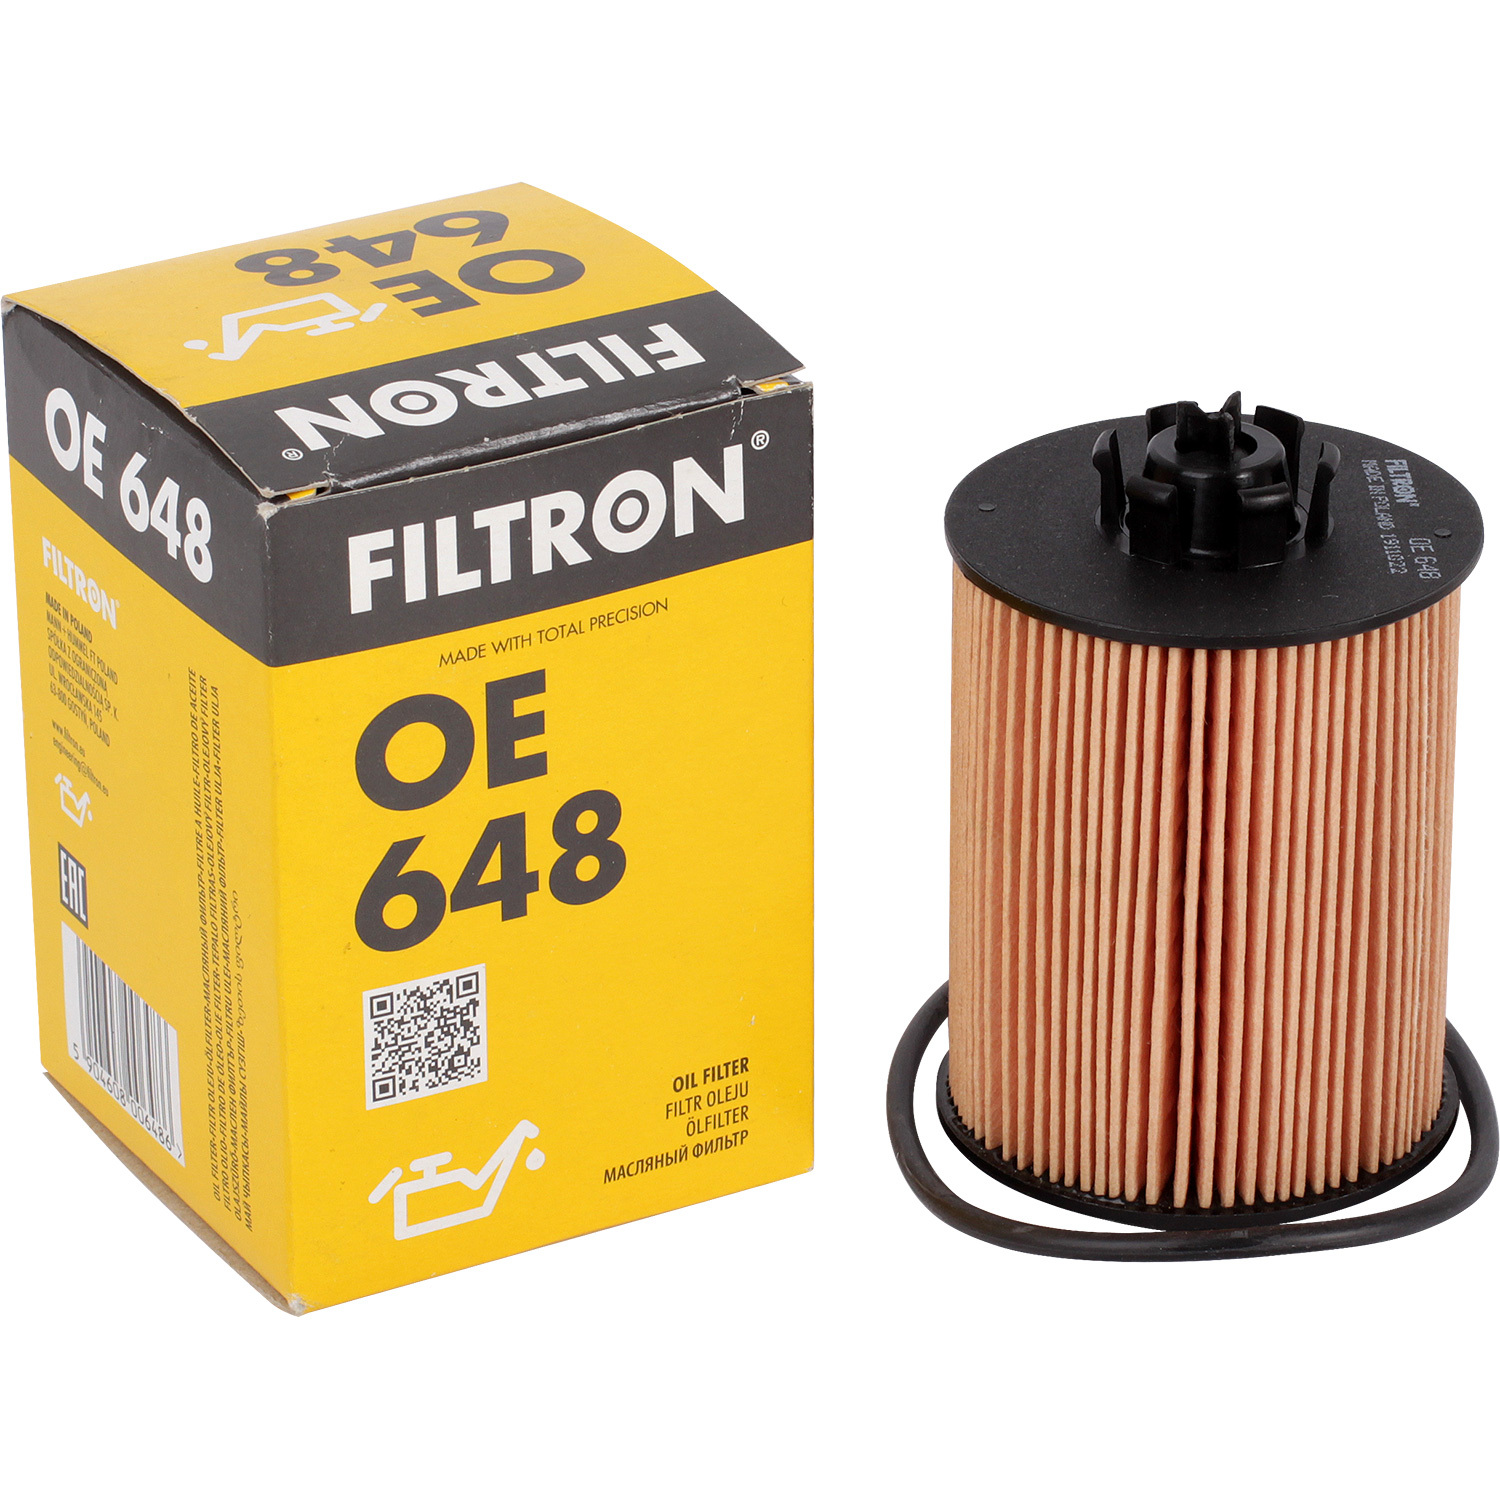 Фильтры Filtron Фильтр масляный Filtron OE648 масляный фильтр filtron op 540 1